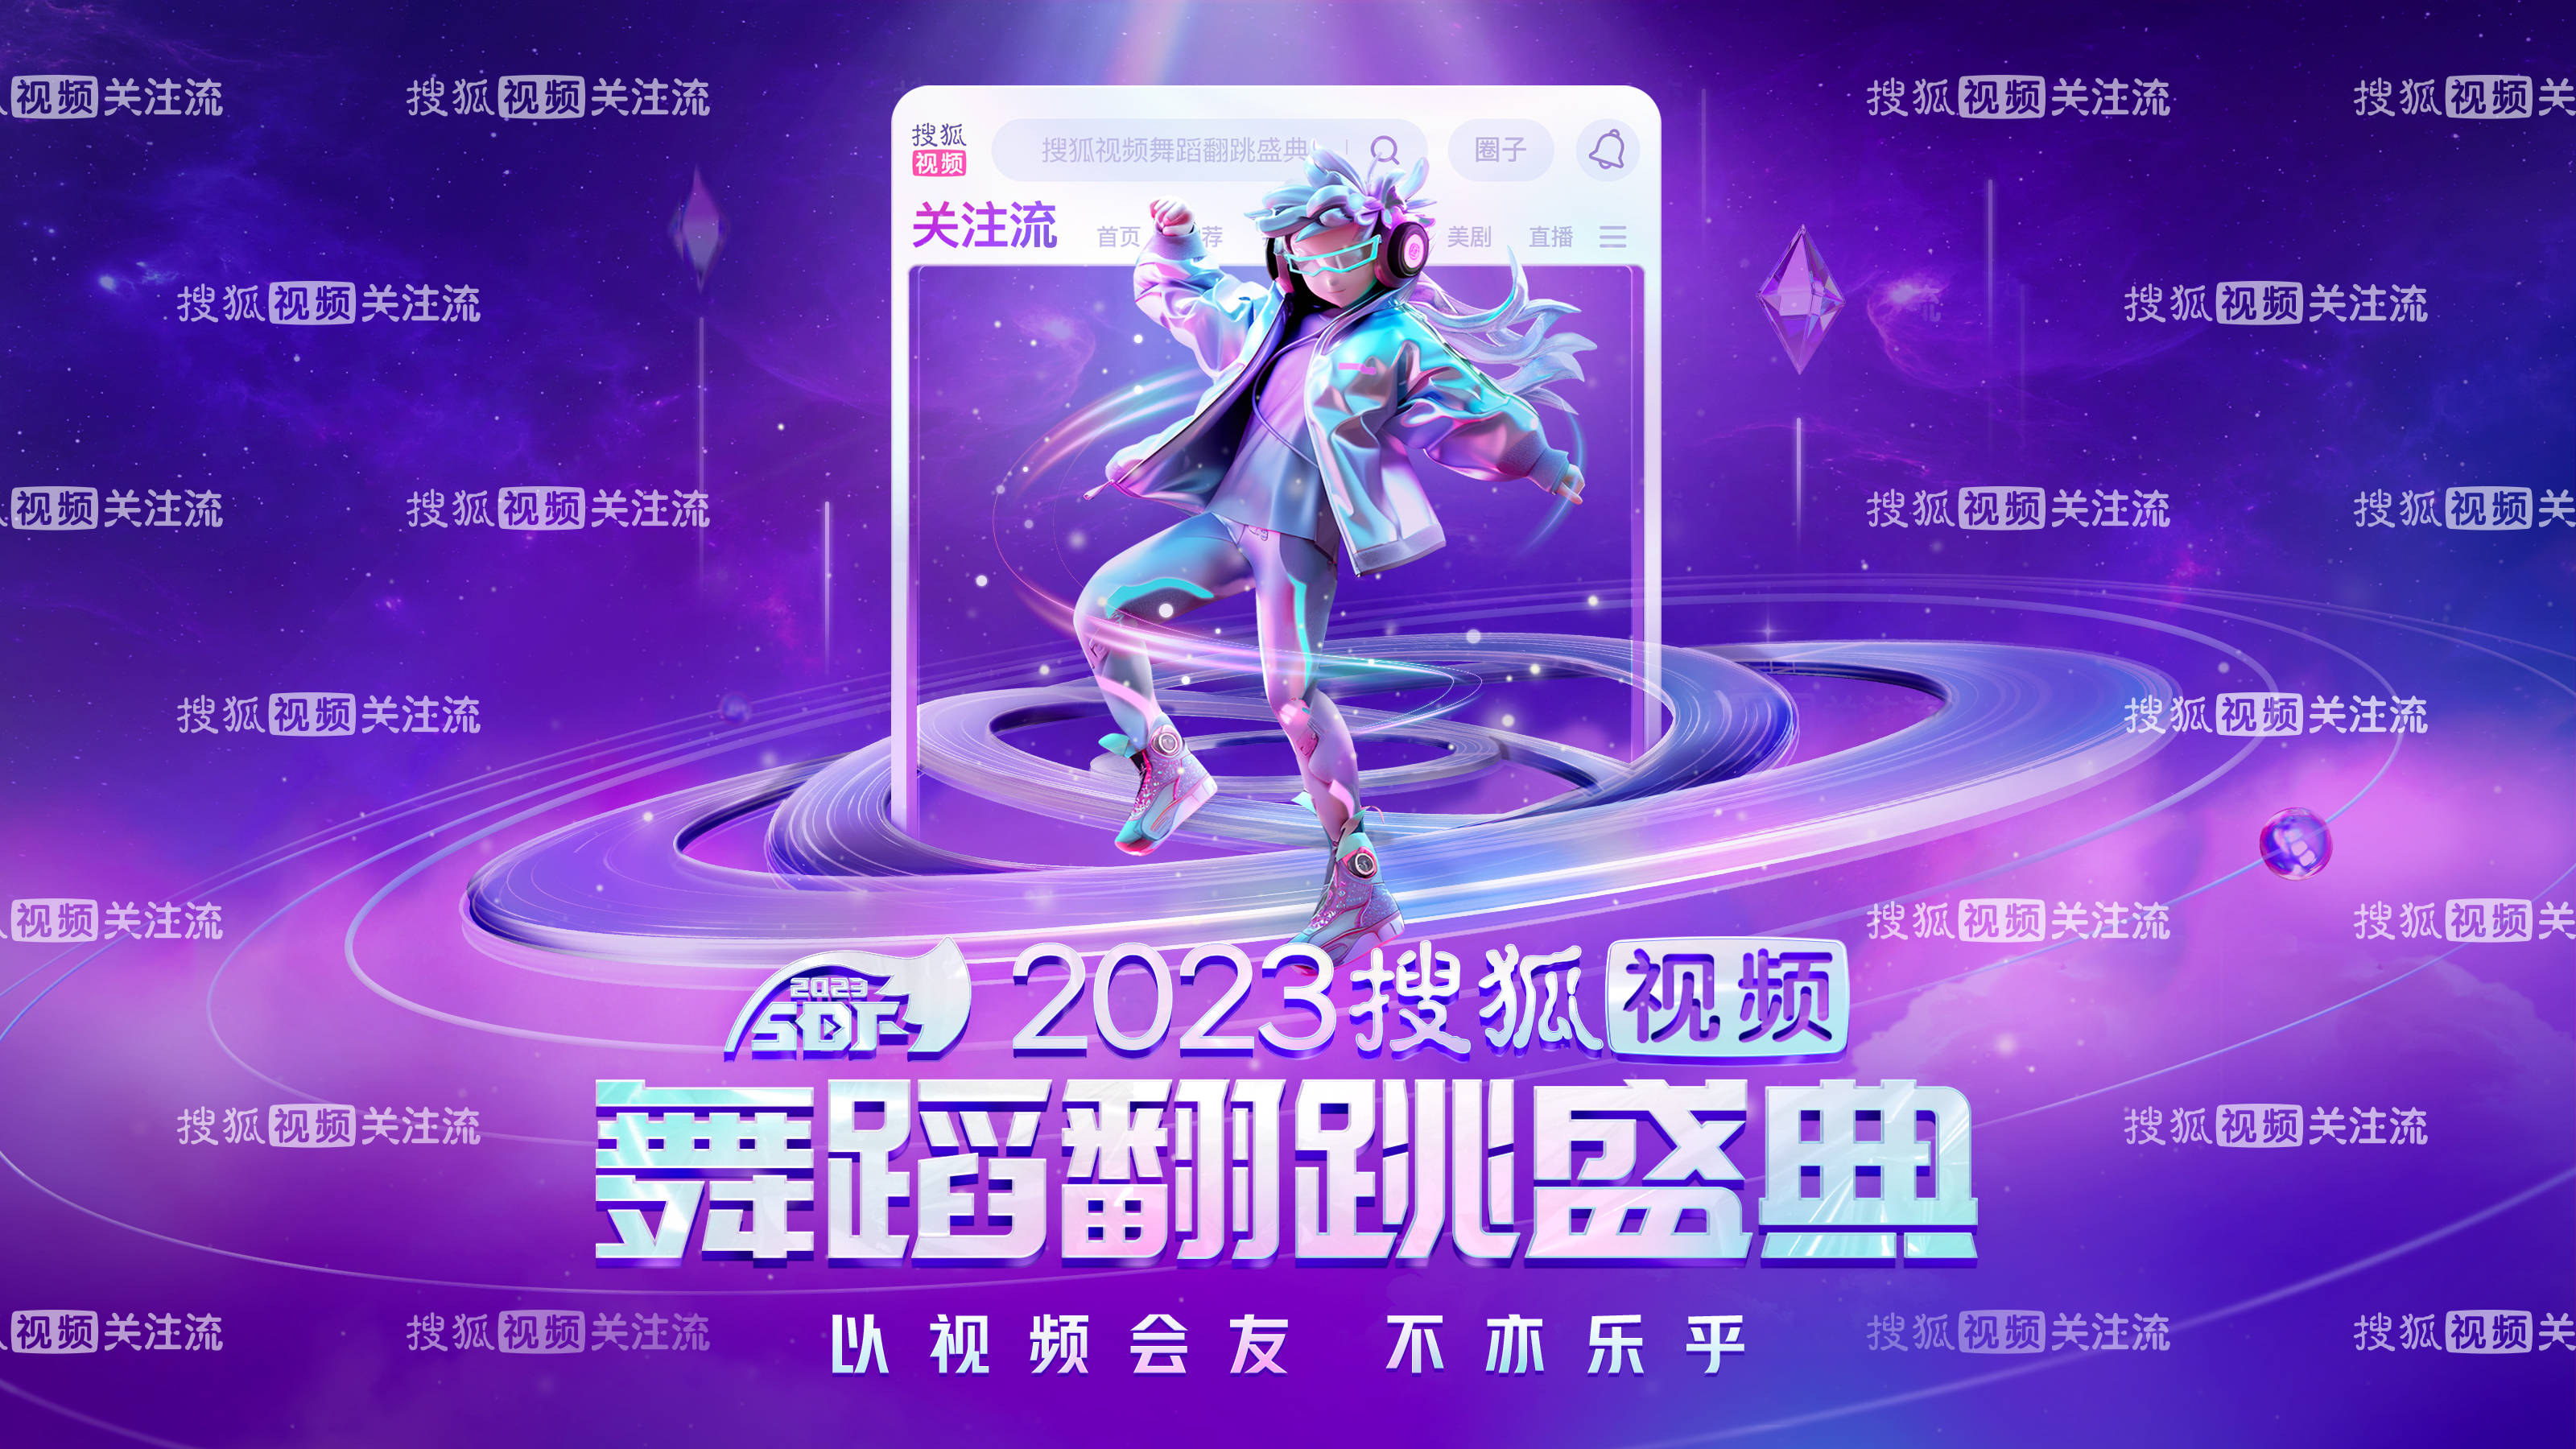 2023搜狐视频舞蹈翻跳盛典今日开启 惊喜嘉宾带来“燃炸舞台”